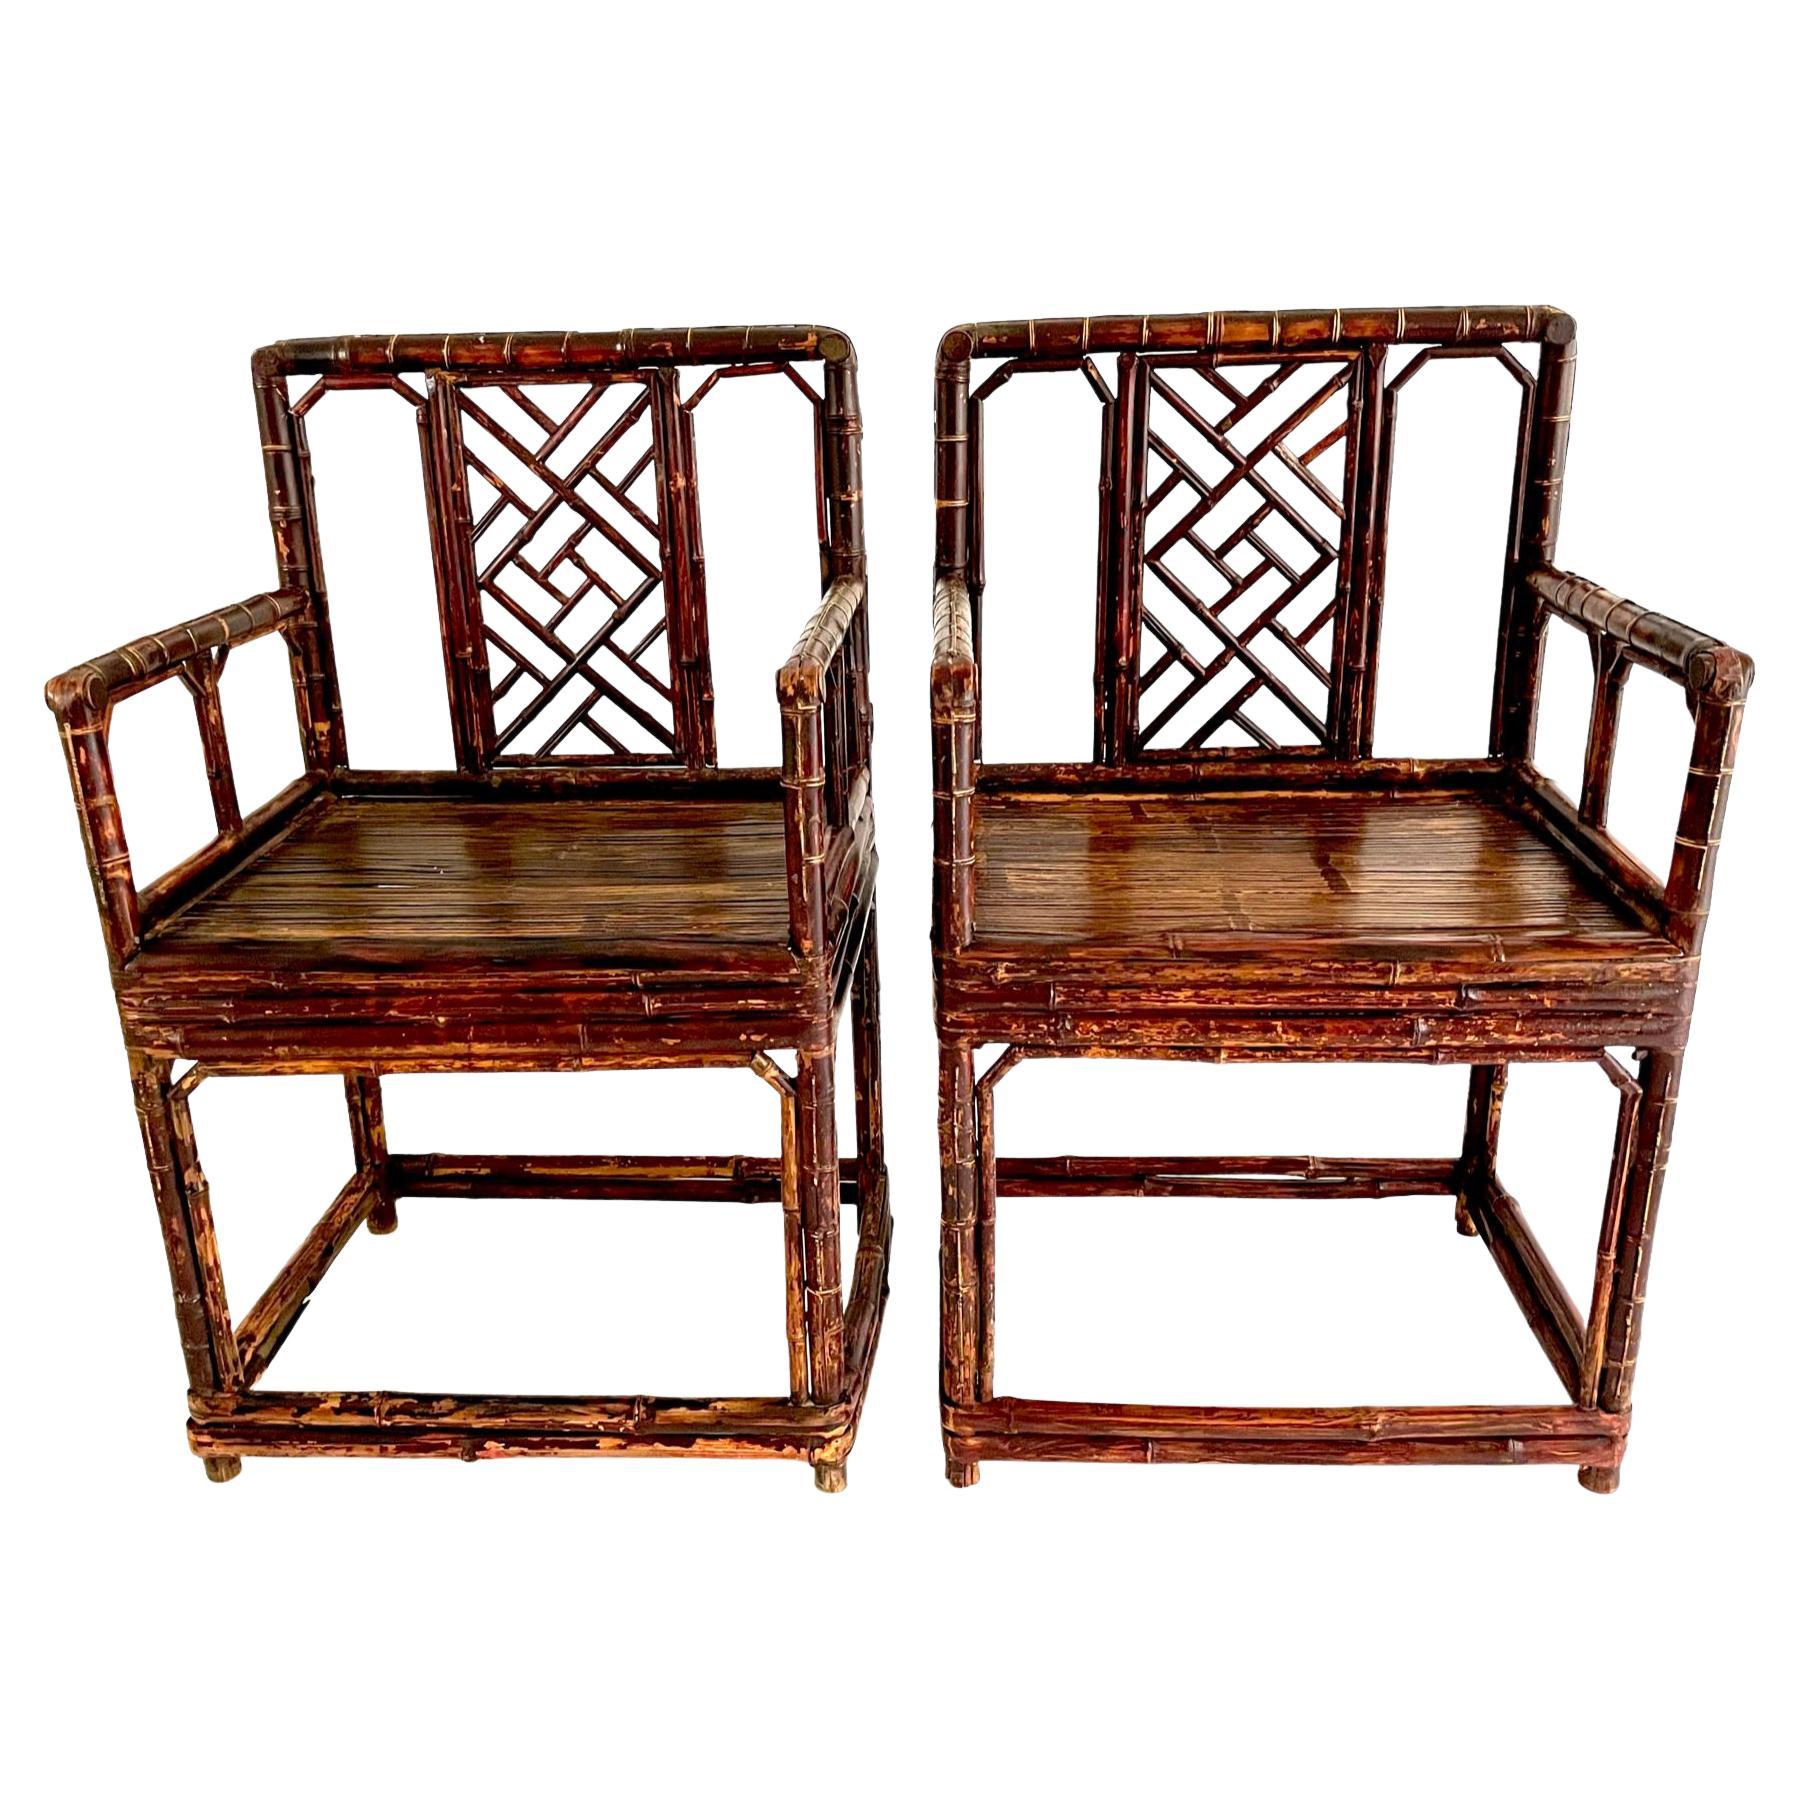 Paire de chaises chinoises en bambou de la fin du XIXe siècle